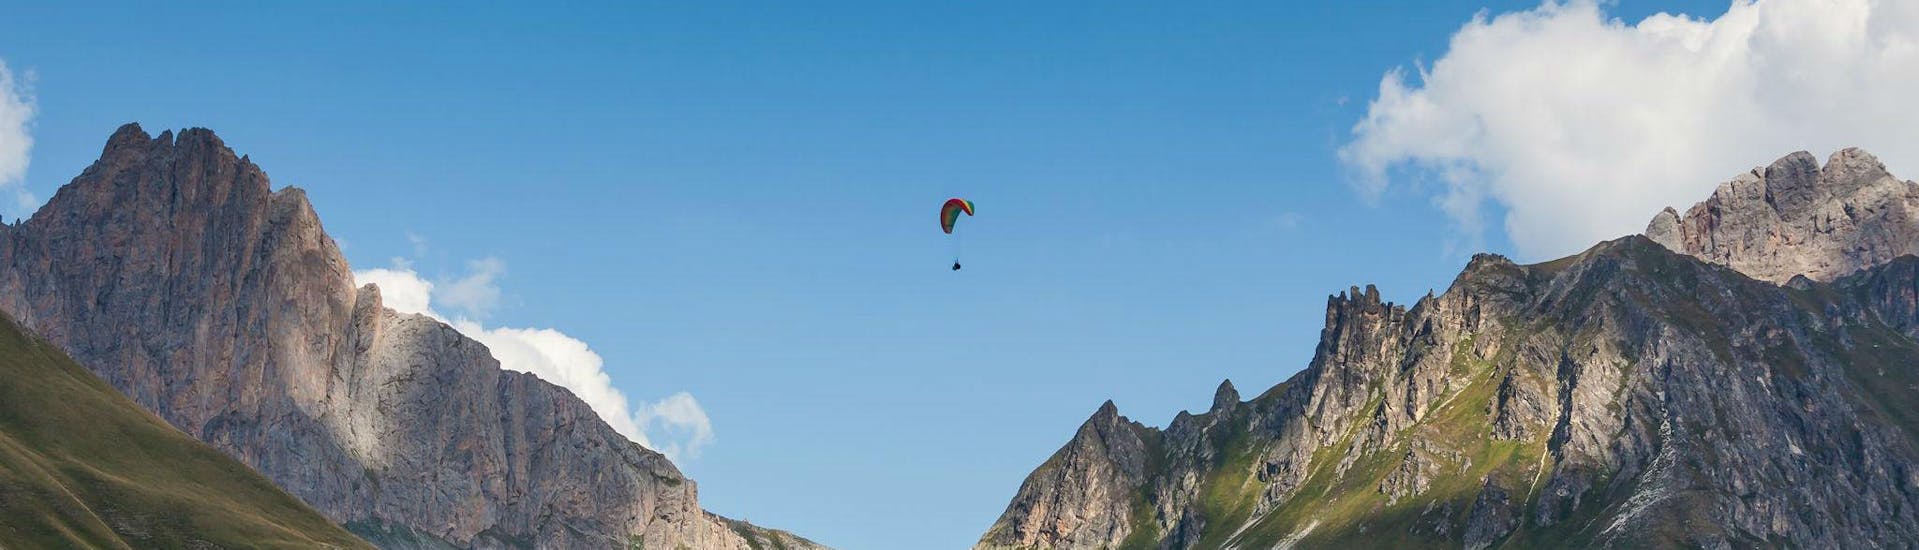 Volo acrobatico in parapendio biposto a Valloire (da 7 anni) - Col du Galibier.